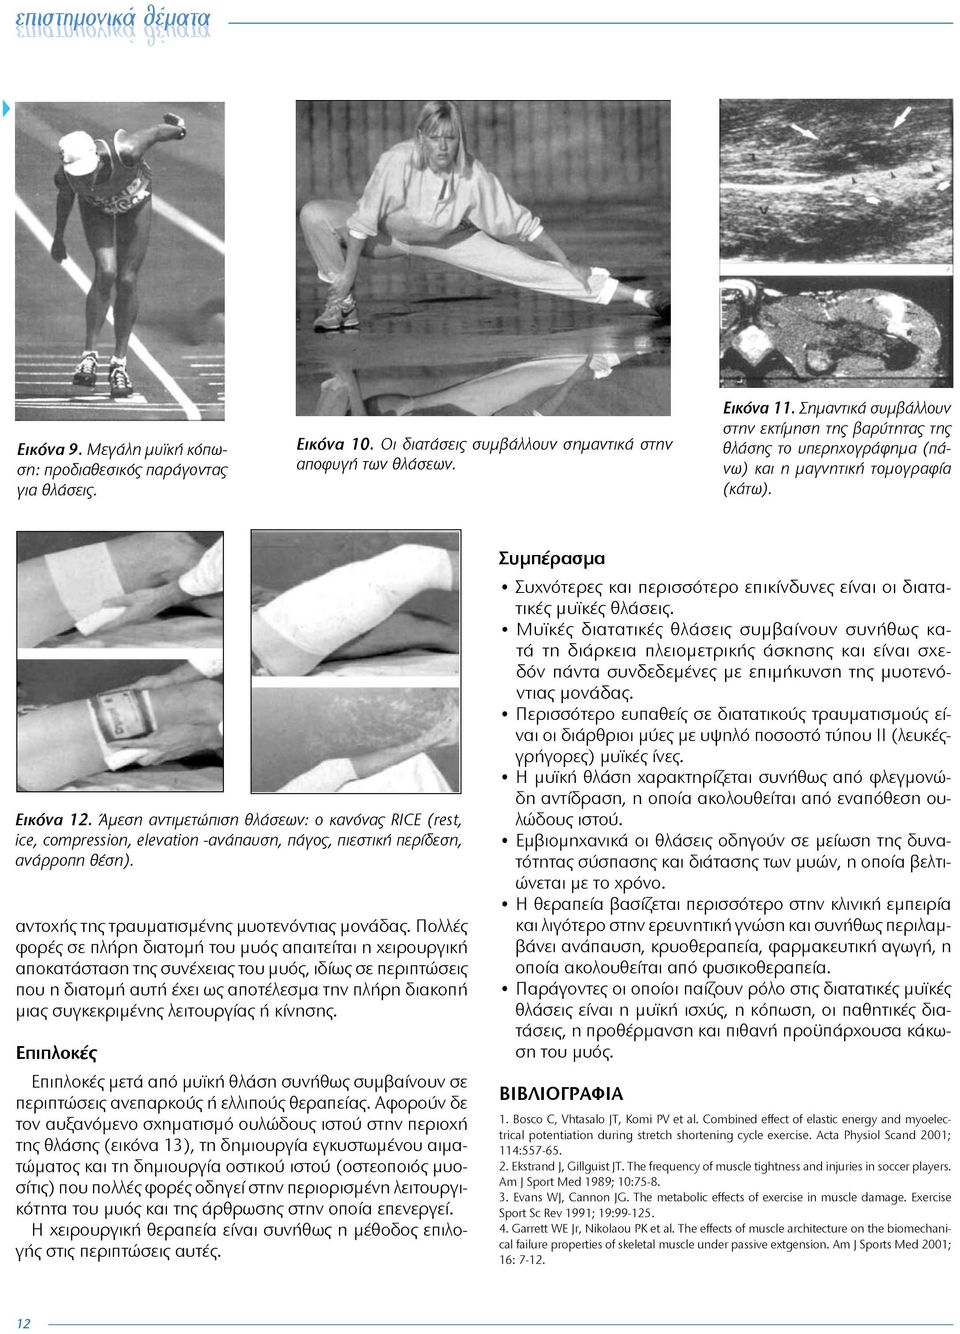 Άμεση αντιμετώπιση θλάσεων: ο κανόνας RICE (rest, ice, compression, elevation -ανάπαυση, πάγος, πιεστική περίδεση, ανάρροπη θέση). αντοχής της τραυματισμένης μυοτενόντιας μονάδας.